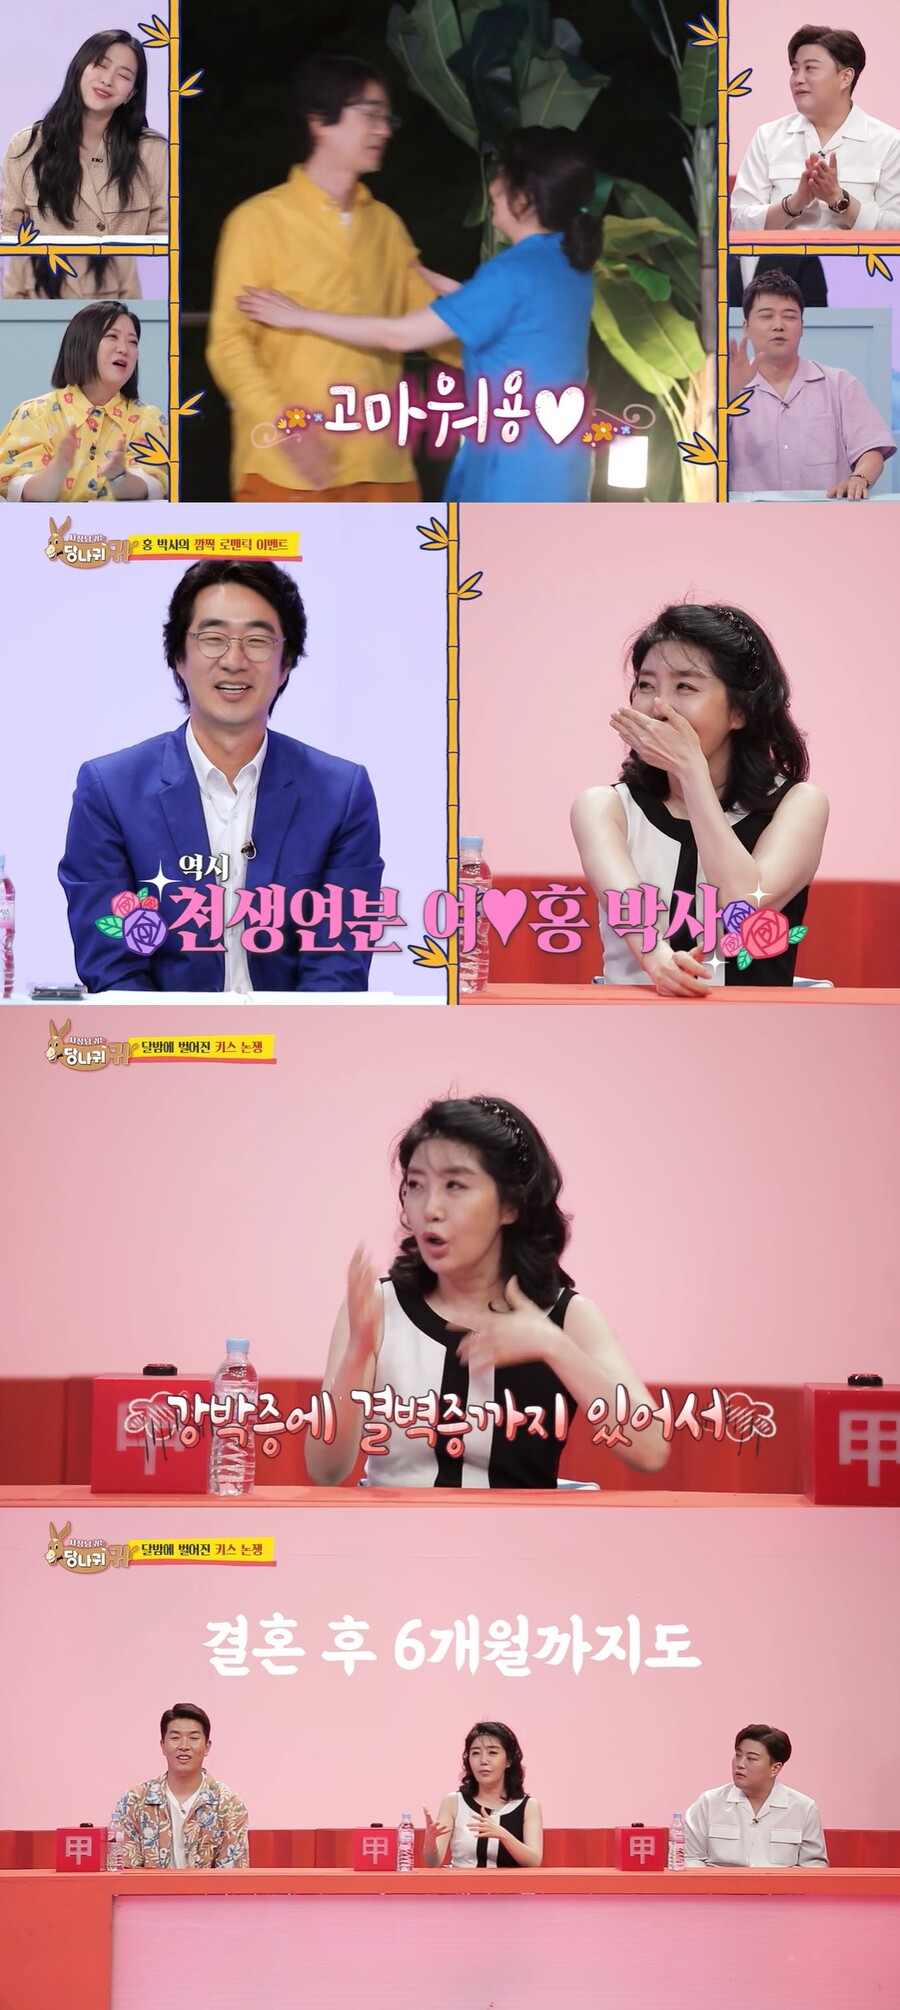 ▲ KBS2 예능 '사장님 귀는 당나귀 귀' 방송 화면. 출처| KBS